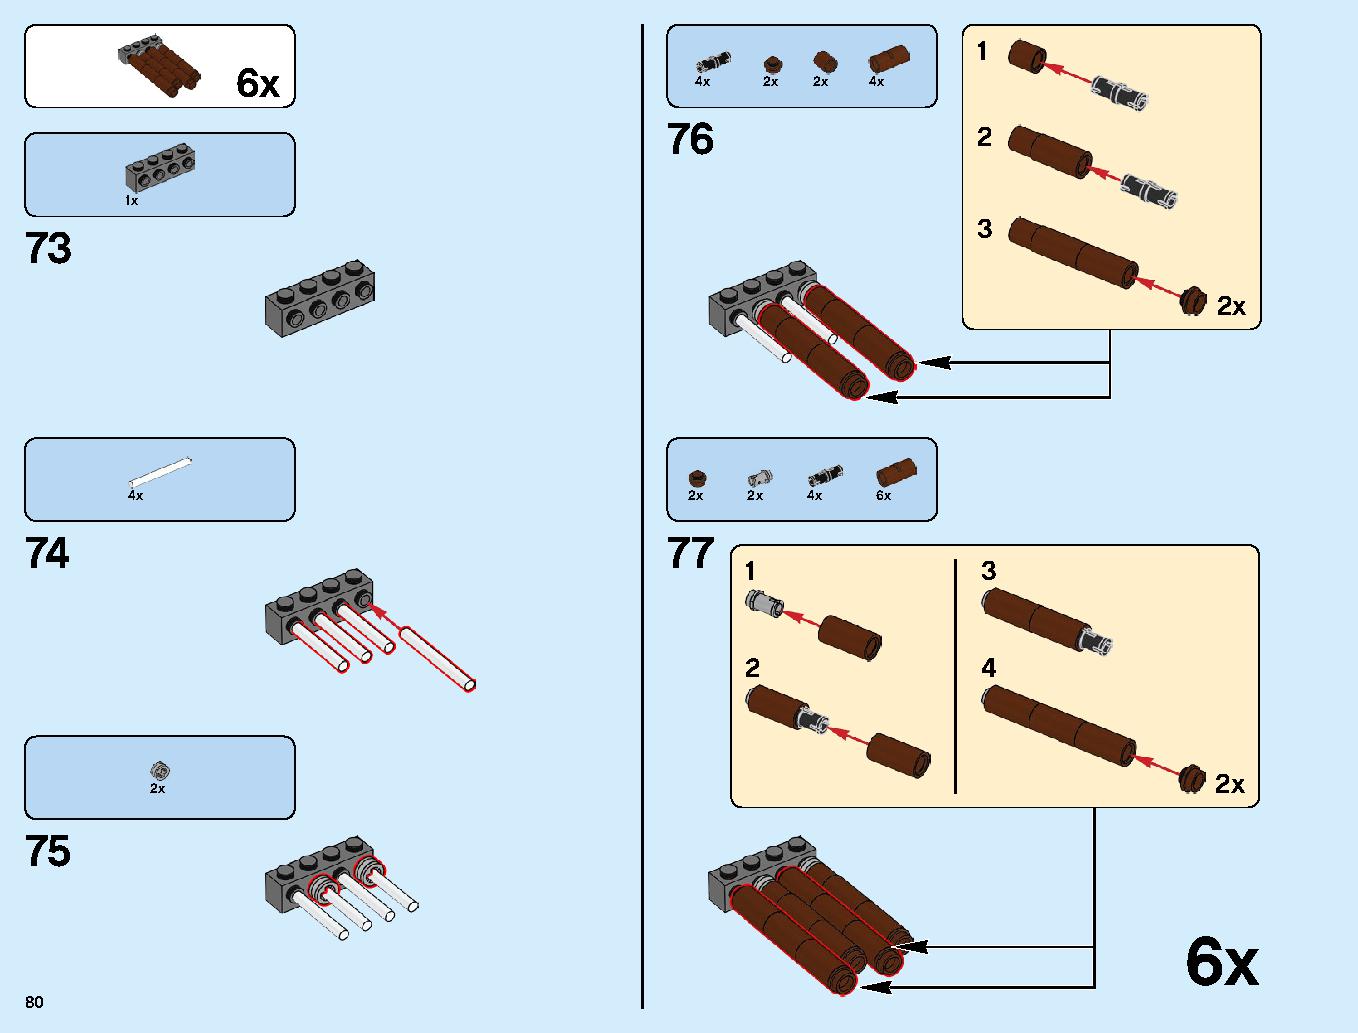 ニンジャゴーシティ・ポートパーク 70657 レゴの商品情報 レゴの説明書・組立方法 80 page